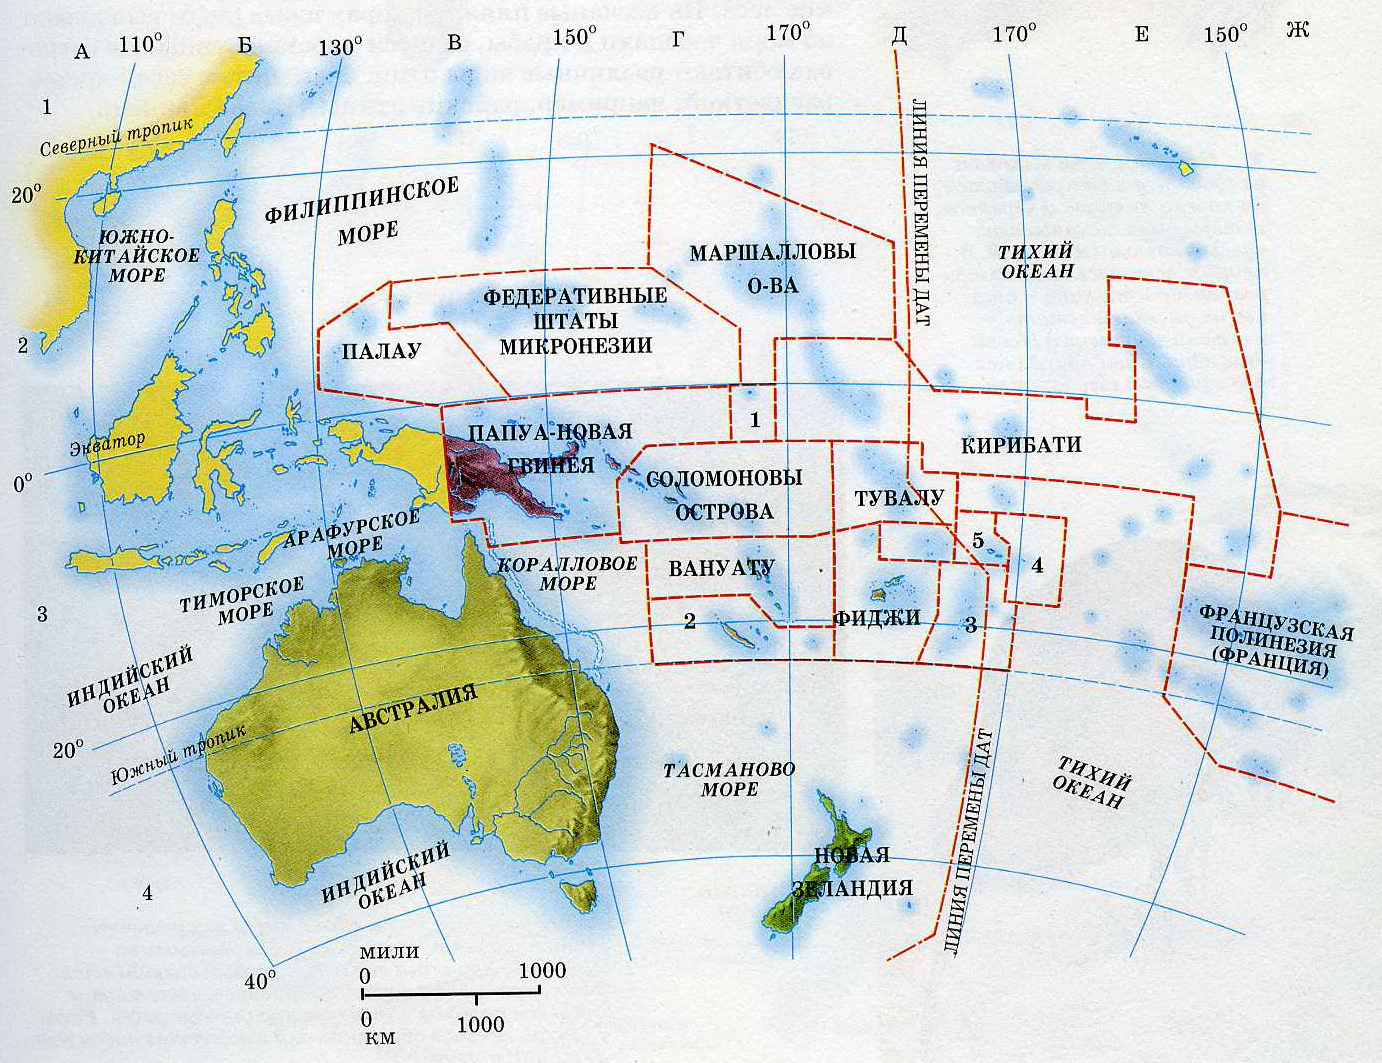 Страны входящие в океан. Государства Австралии и Океании на карте. Политическая карта Океании. Границы трех регионов Океании в Австралии на карте. Границы трех регионов Океании в Австралии на контурной карте.